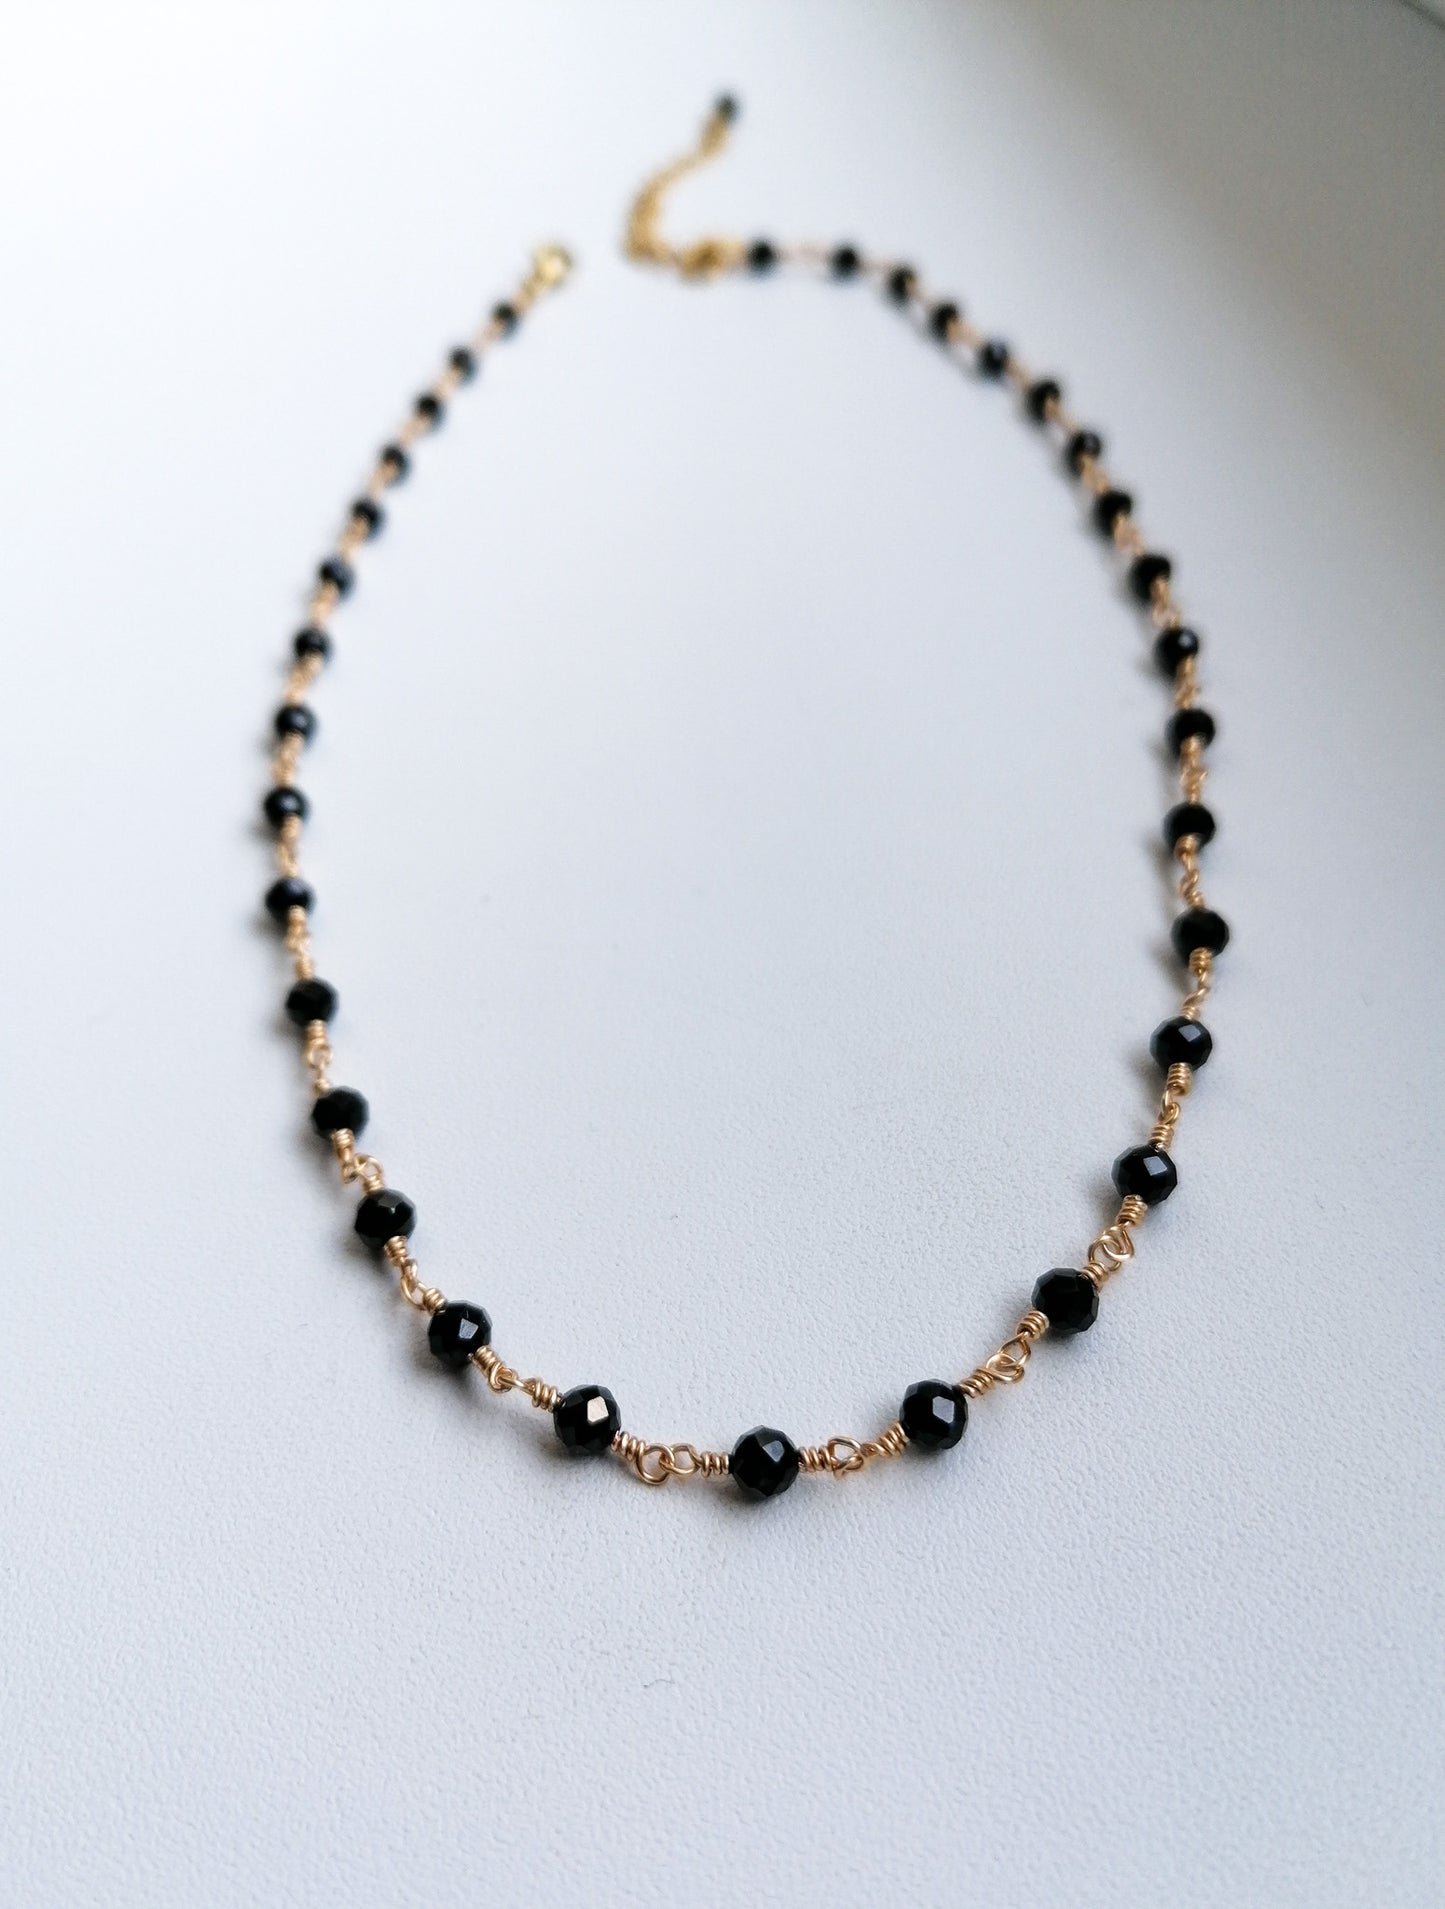 Monaco necklace - black spinel